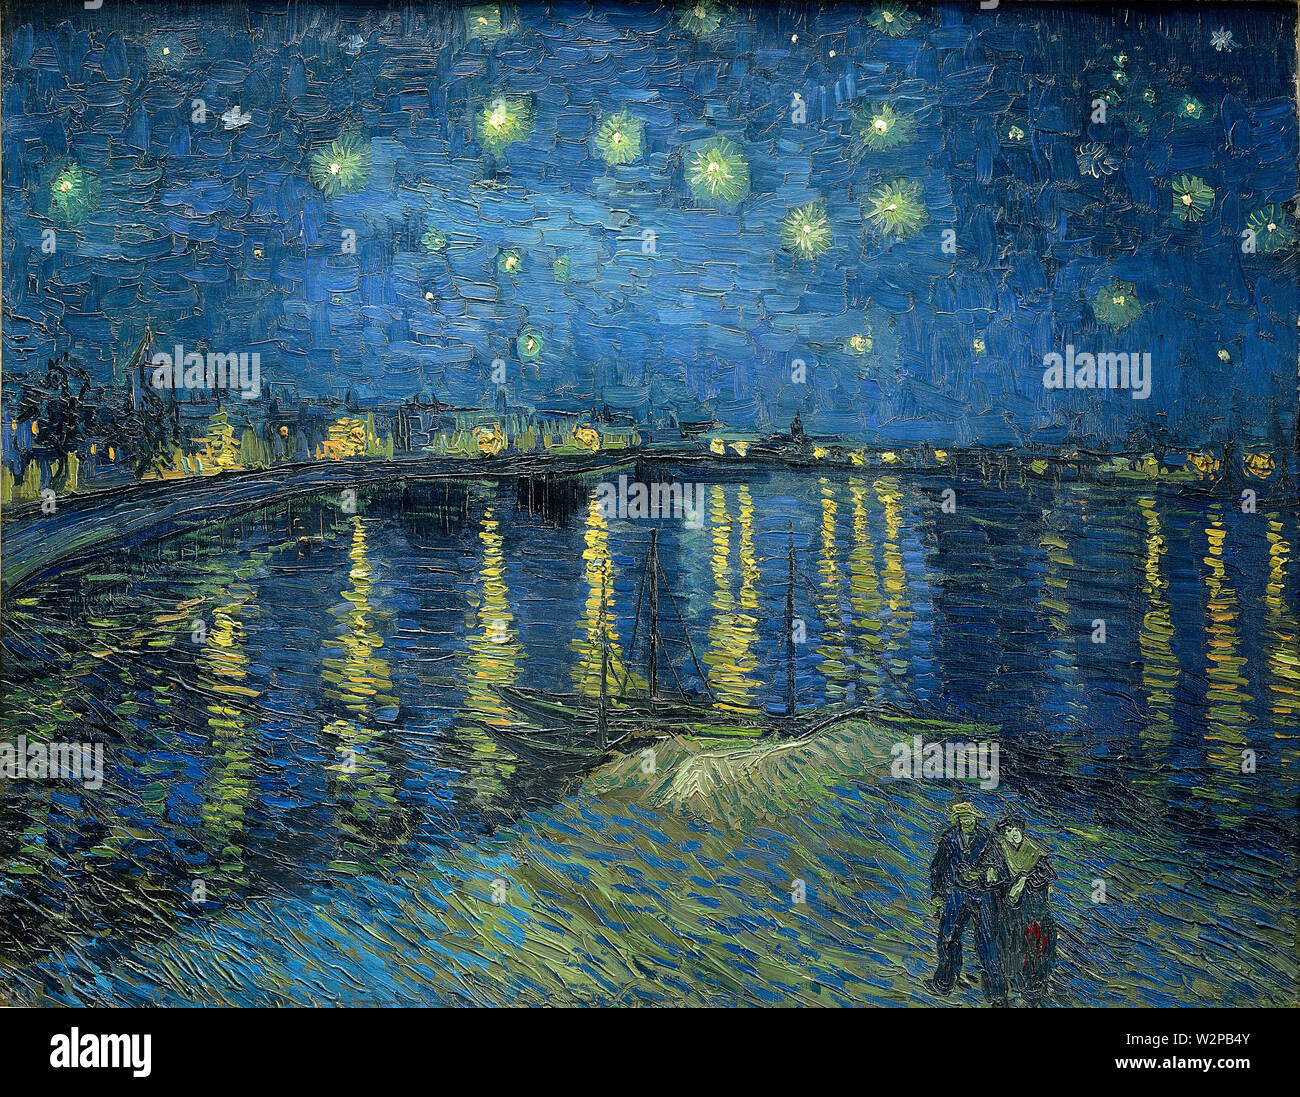 Sternennacht Über der Rhône (Nuit étoilée sur le Rhône) (1888) von Vincent van Gogh - Sehr hohe Bildqualität von diesem Meisterwerk der Malerei. Stockfoto